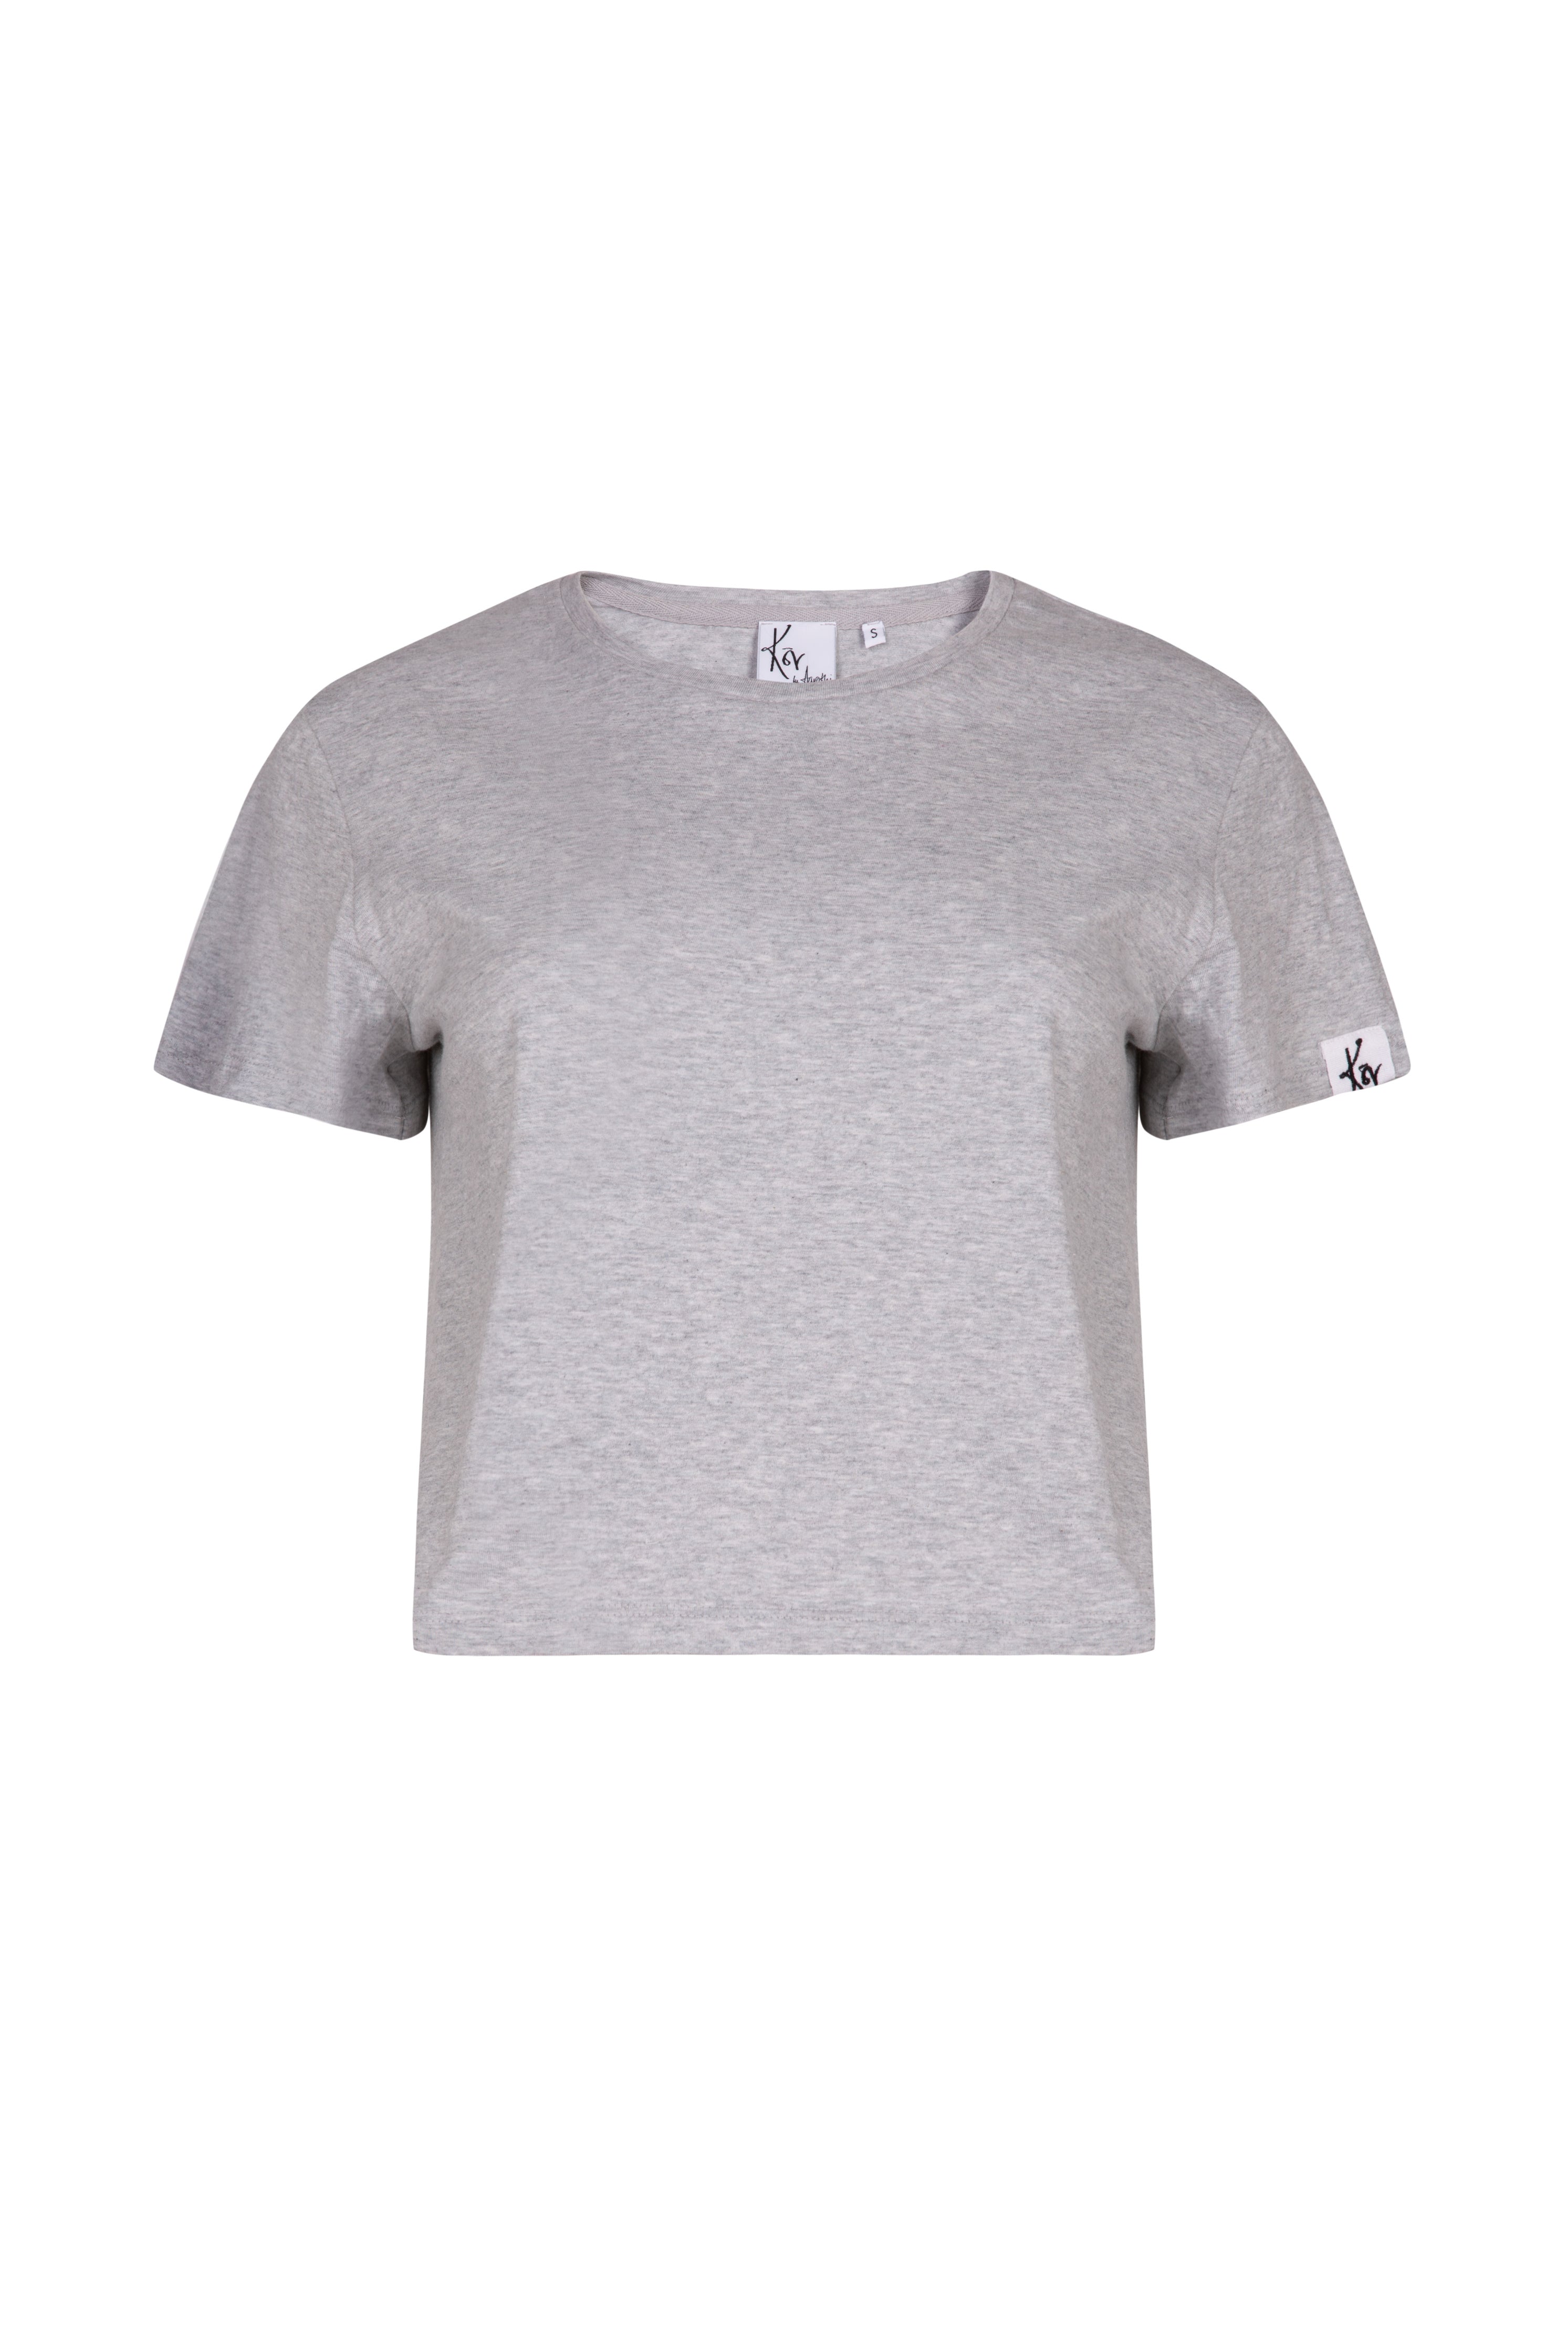 Grey organic cotton cropped boxy fir women's T-shirt